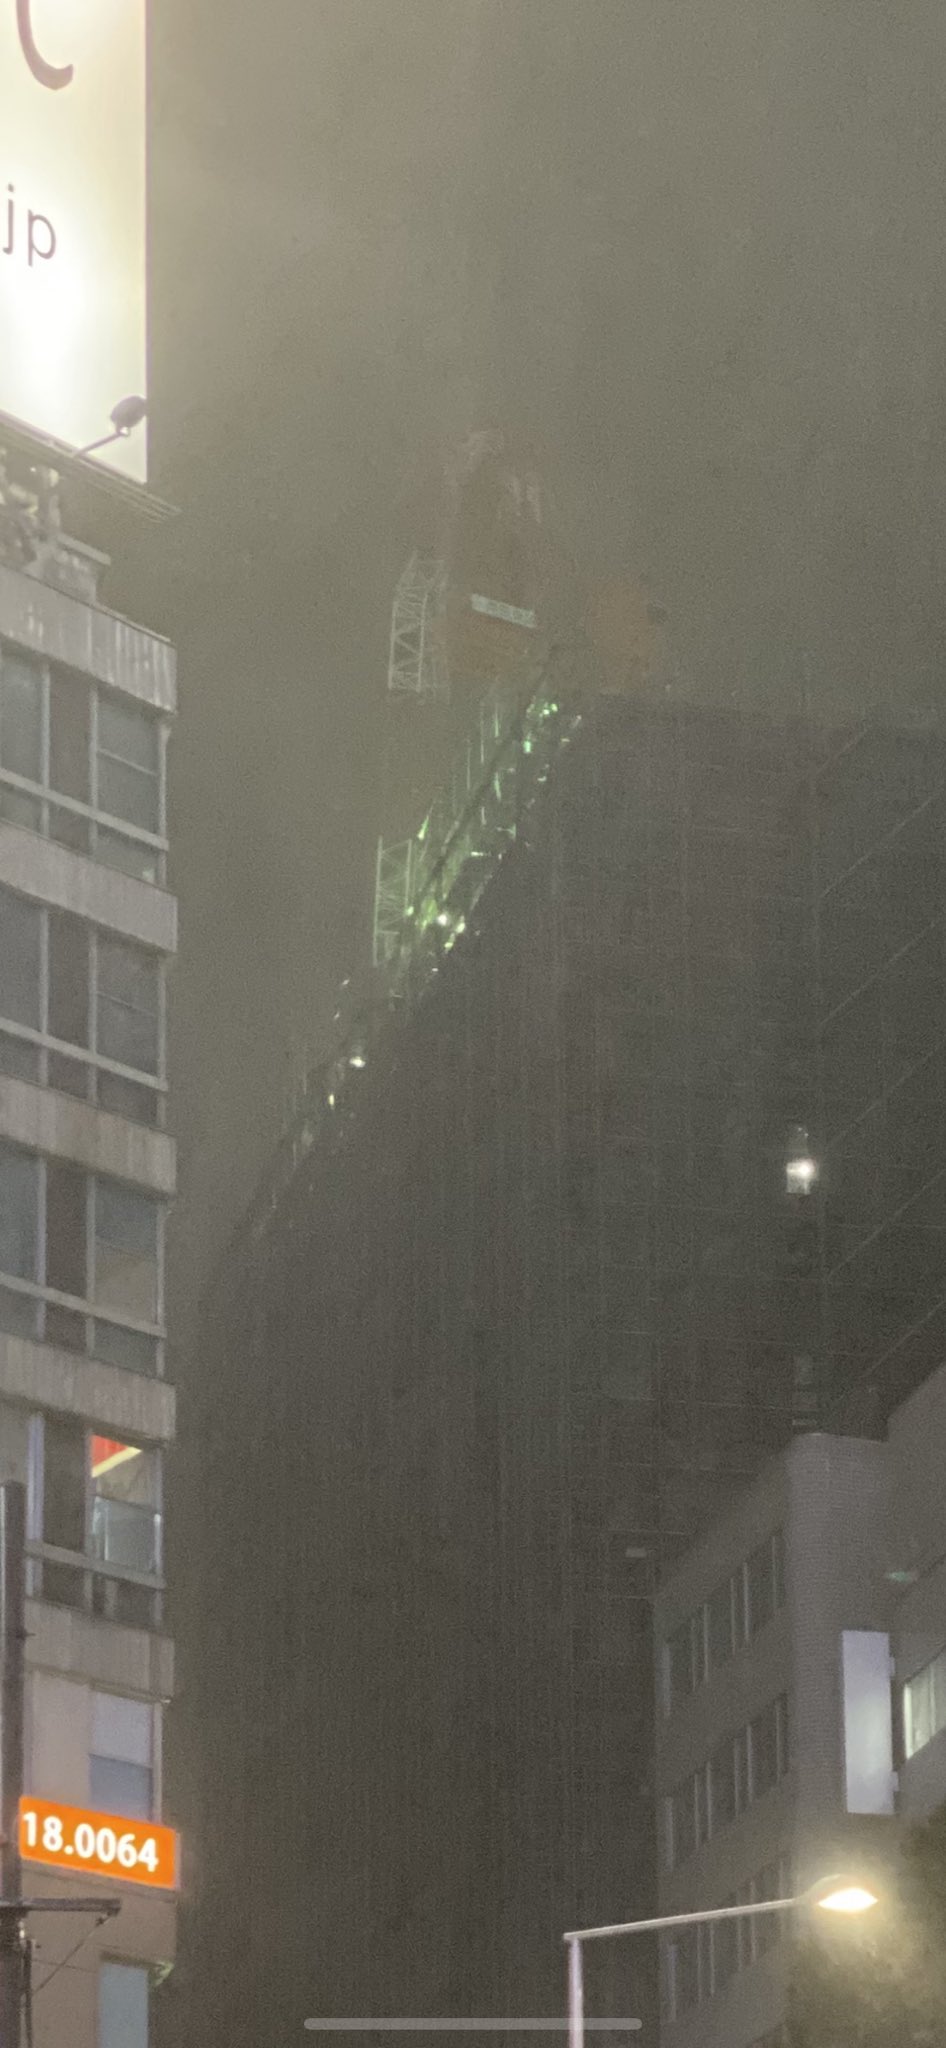 画像 渋谷宮益坂のビル屋上にあるクレーンが折れてる 台風19号 T Co Pinnr16p56 まとめダネ